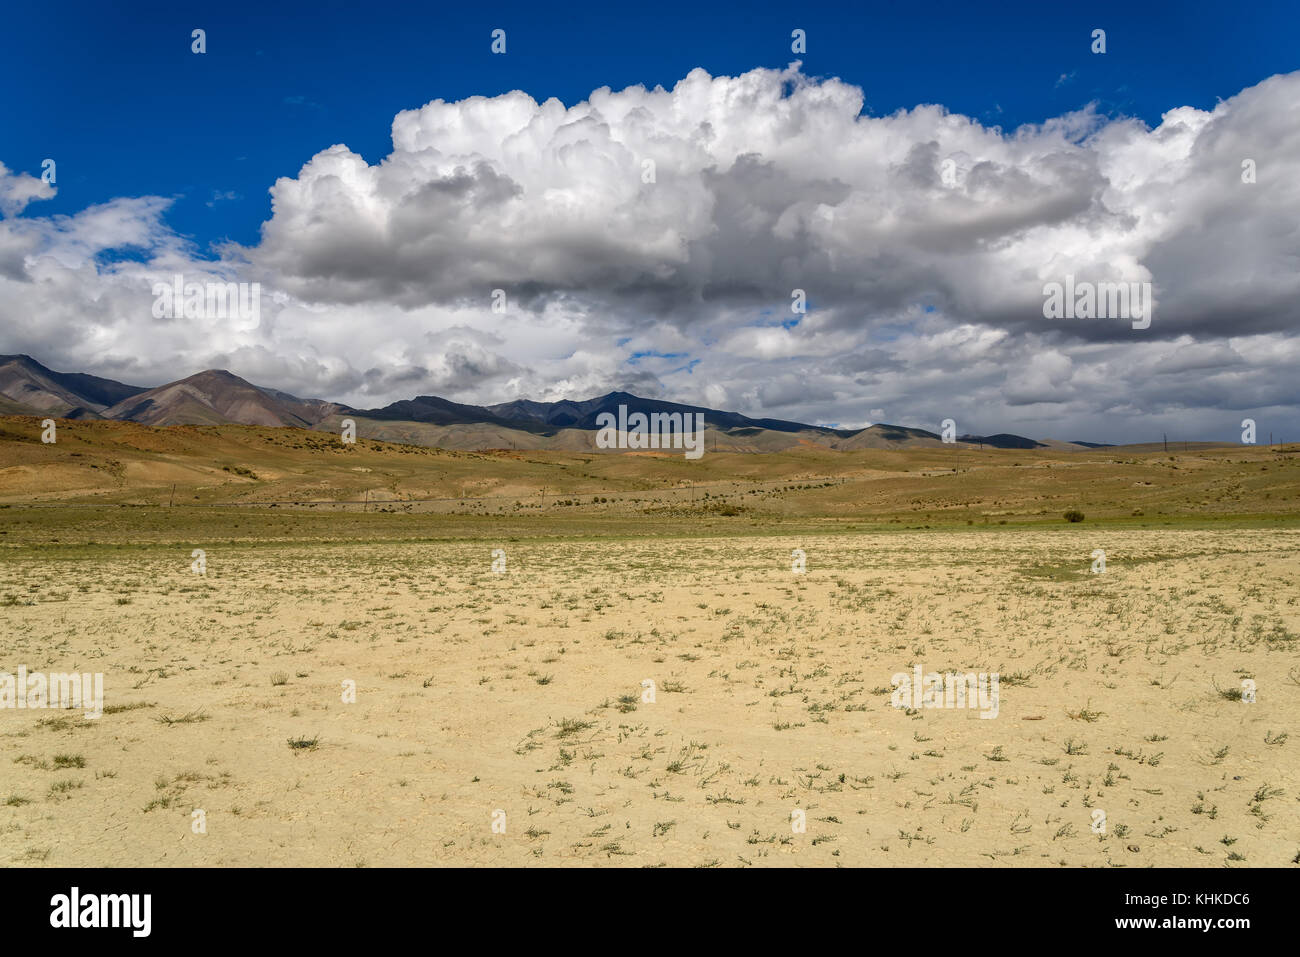 Die malerischen Steppe, Wüste, Landschaft mit Bergen und dem Trockenen mit seltenen Pflanzen auf einem Hintergrund von blauem Himmel und Wolken Stockfoto